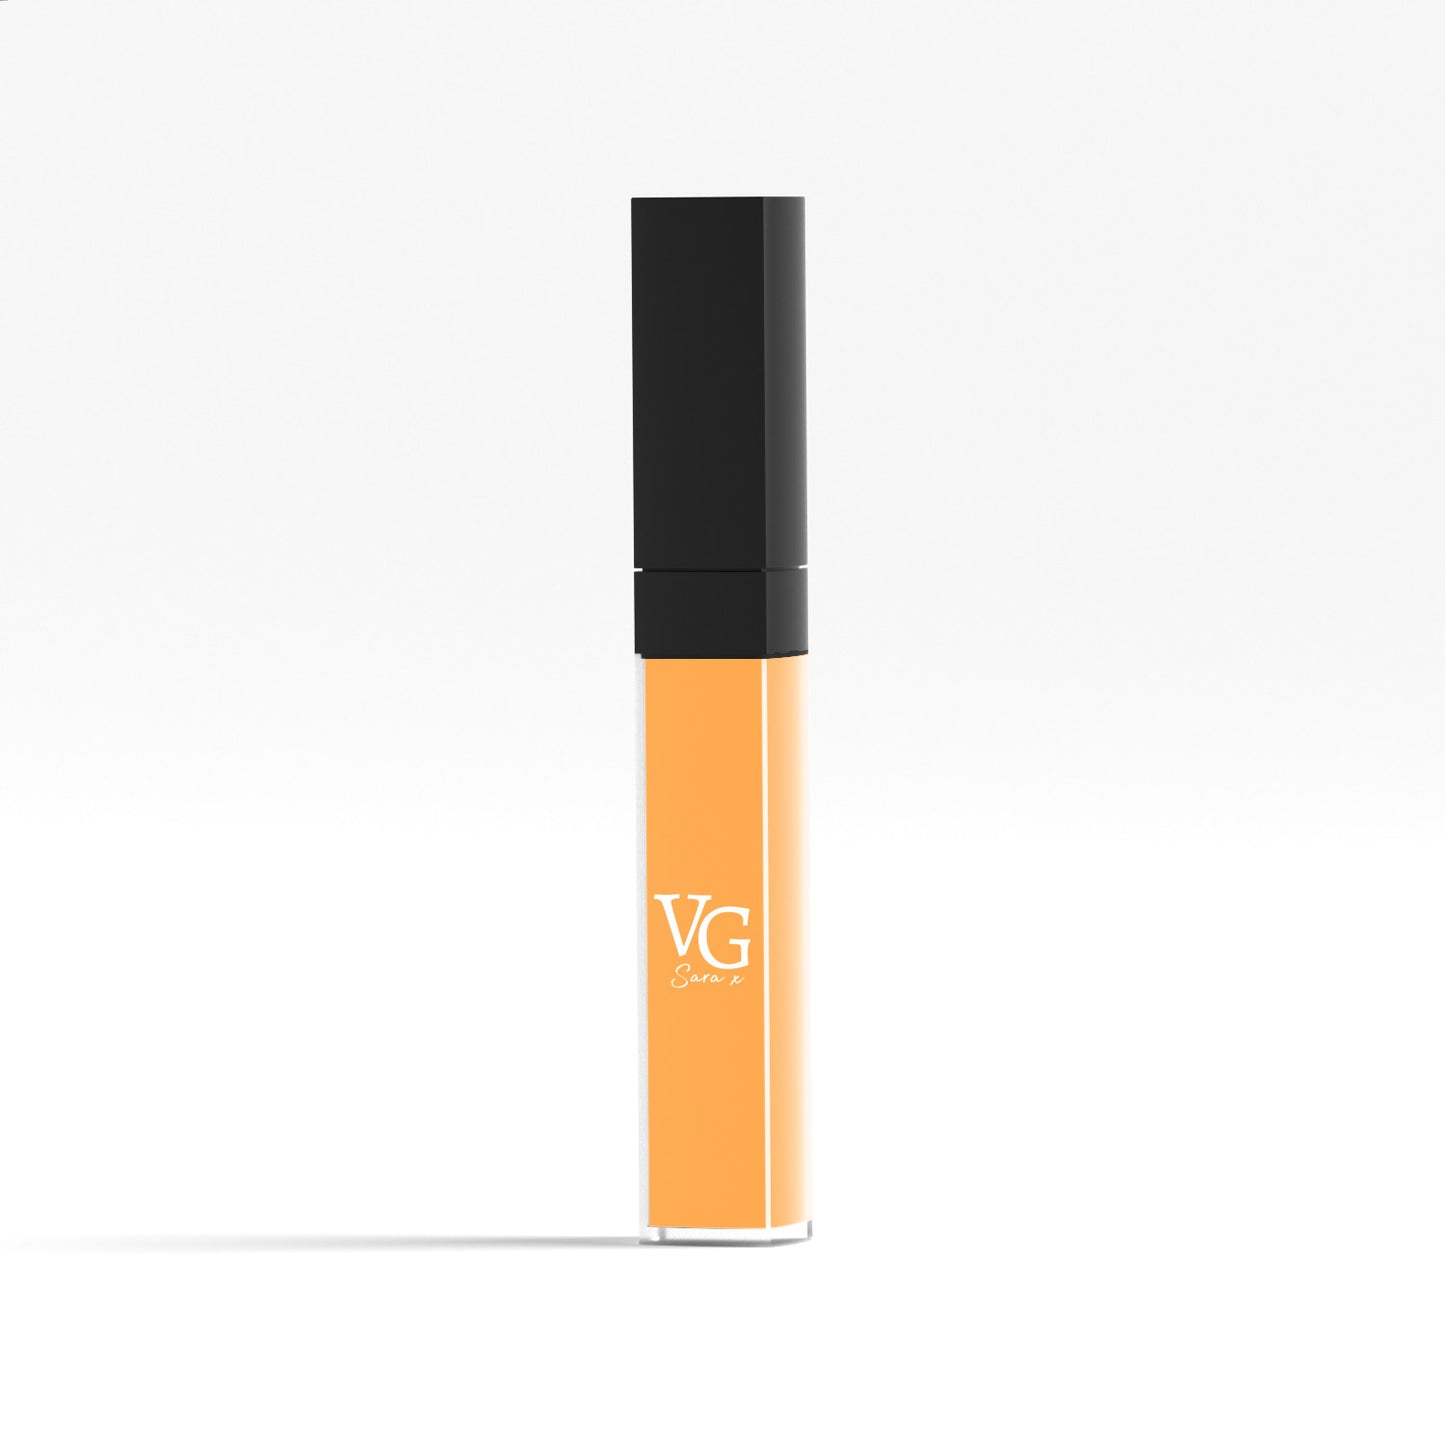 Vegan liquid lipstick by VG in sleek tube packaging